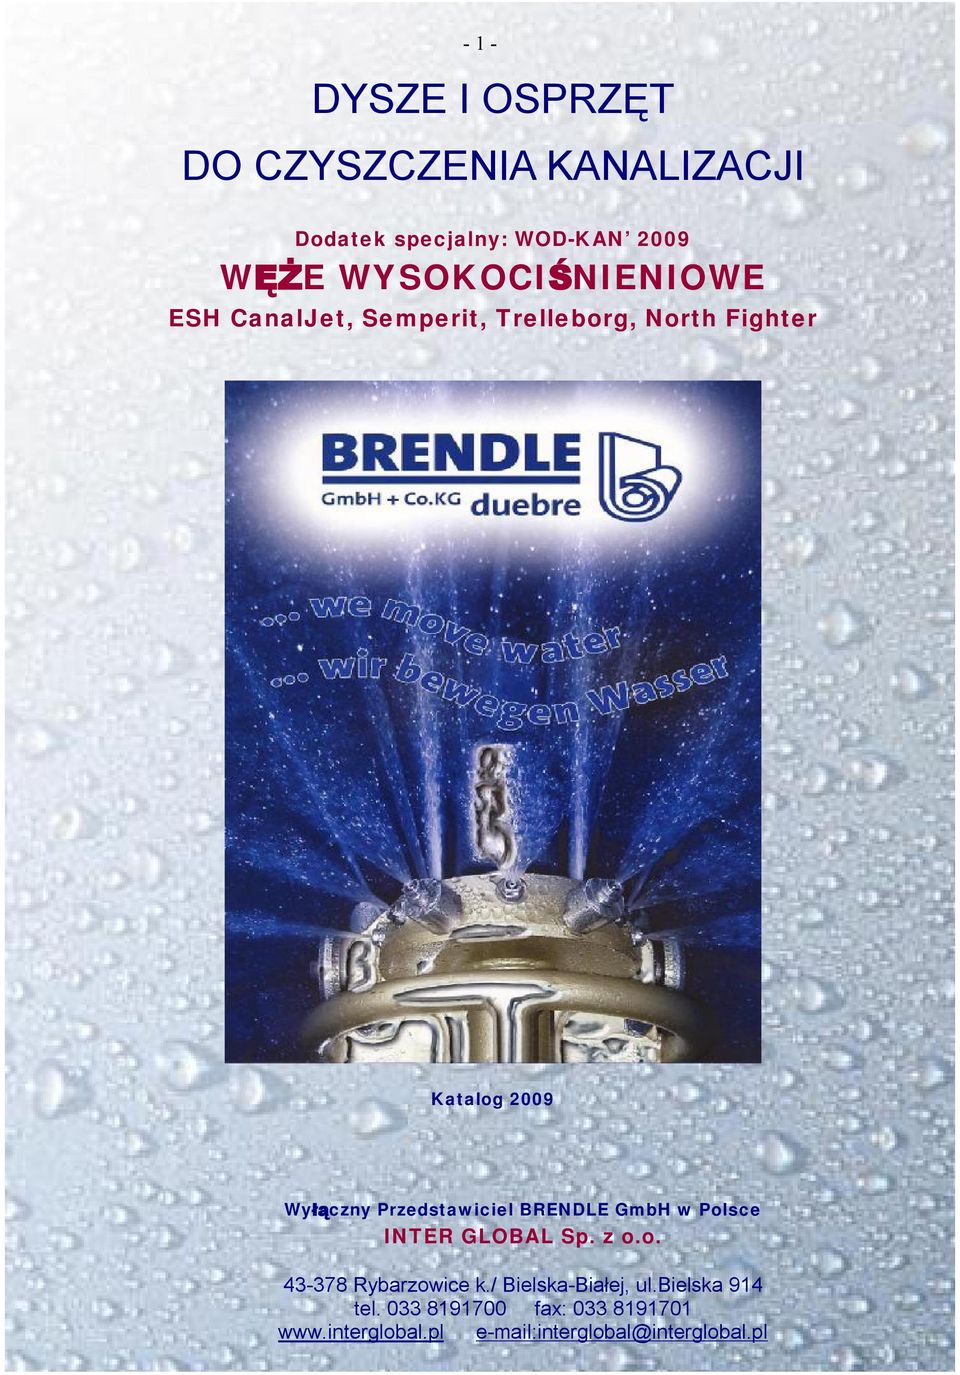 Przedstawiciel BRENDLE GmbH w Polsce INTER GLOBAL Sp. z o.o. 43-378 Rybarzowice k.